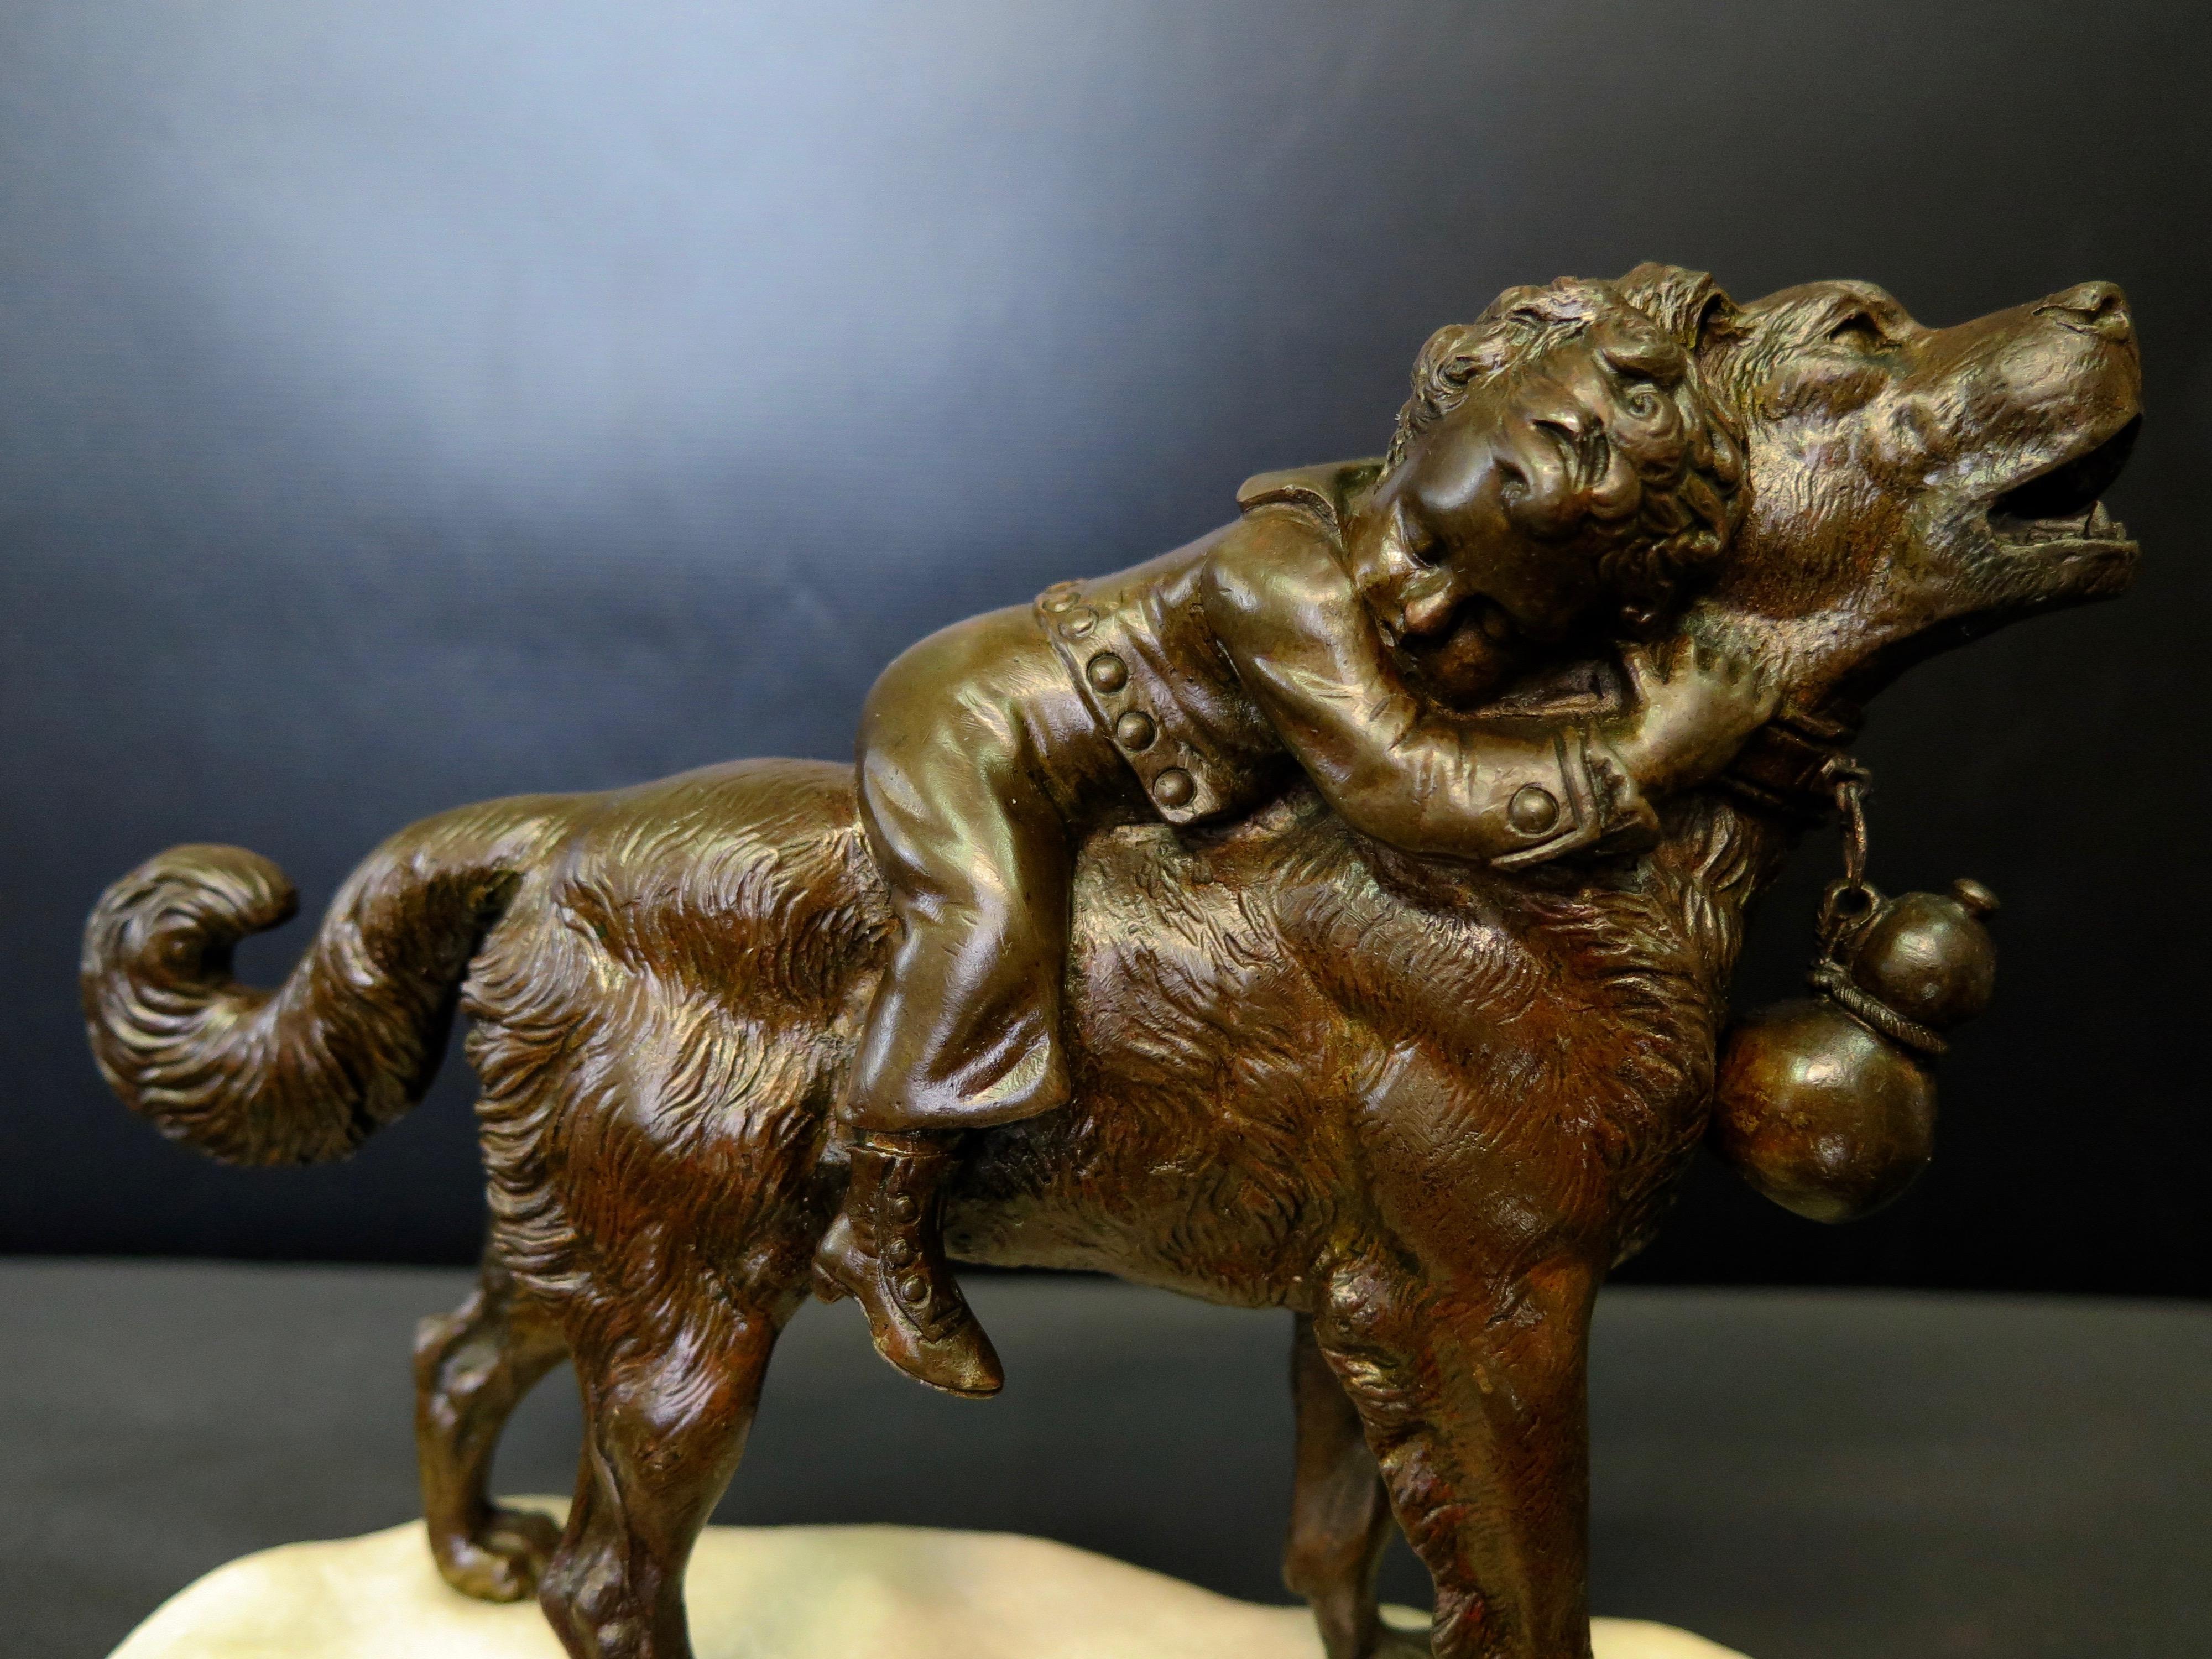 Cette charmante sculpture française en bronze du XIXe siècle représente un jeune garçon, en sécurité, avec le meilleur ami de l'homme (et le sien), un chien ! Le sculpteur invite tous les spectateurs à profiter de cette scène agréable et captivante.